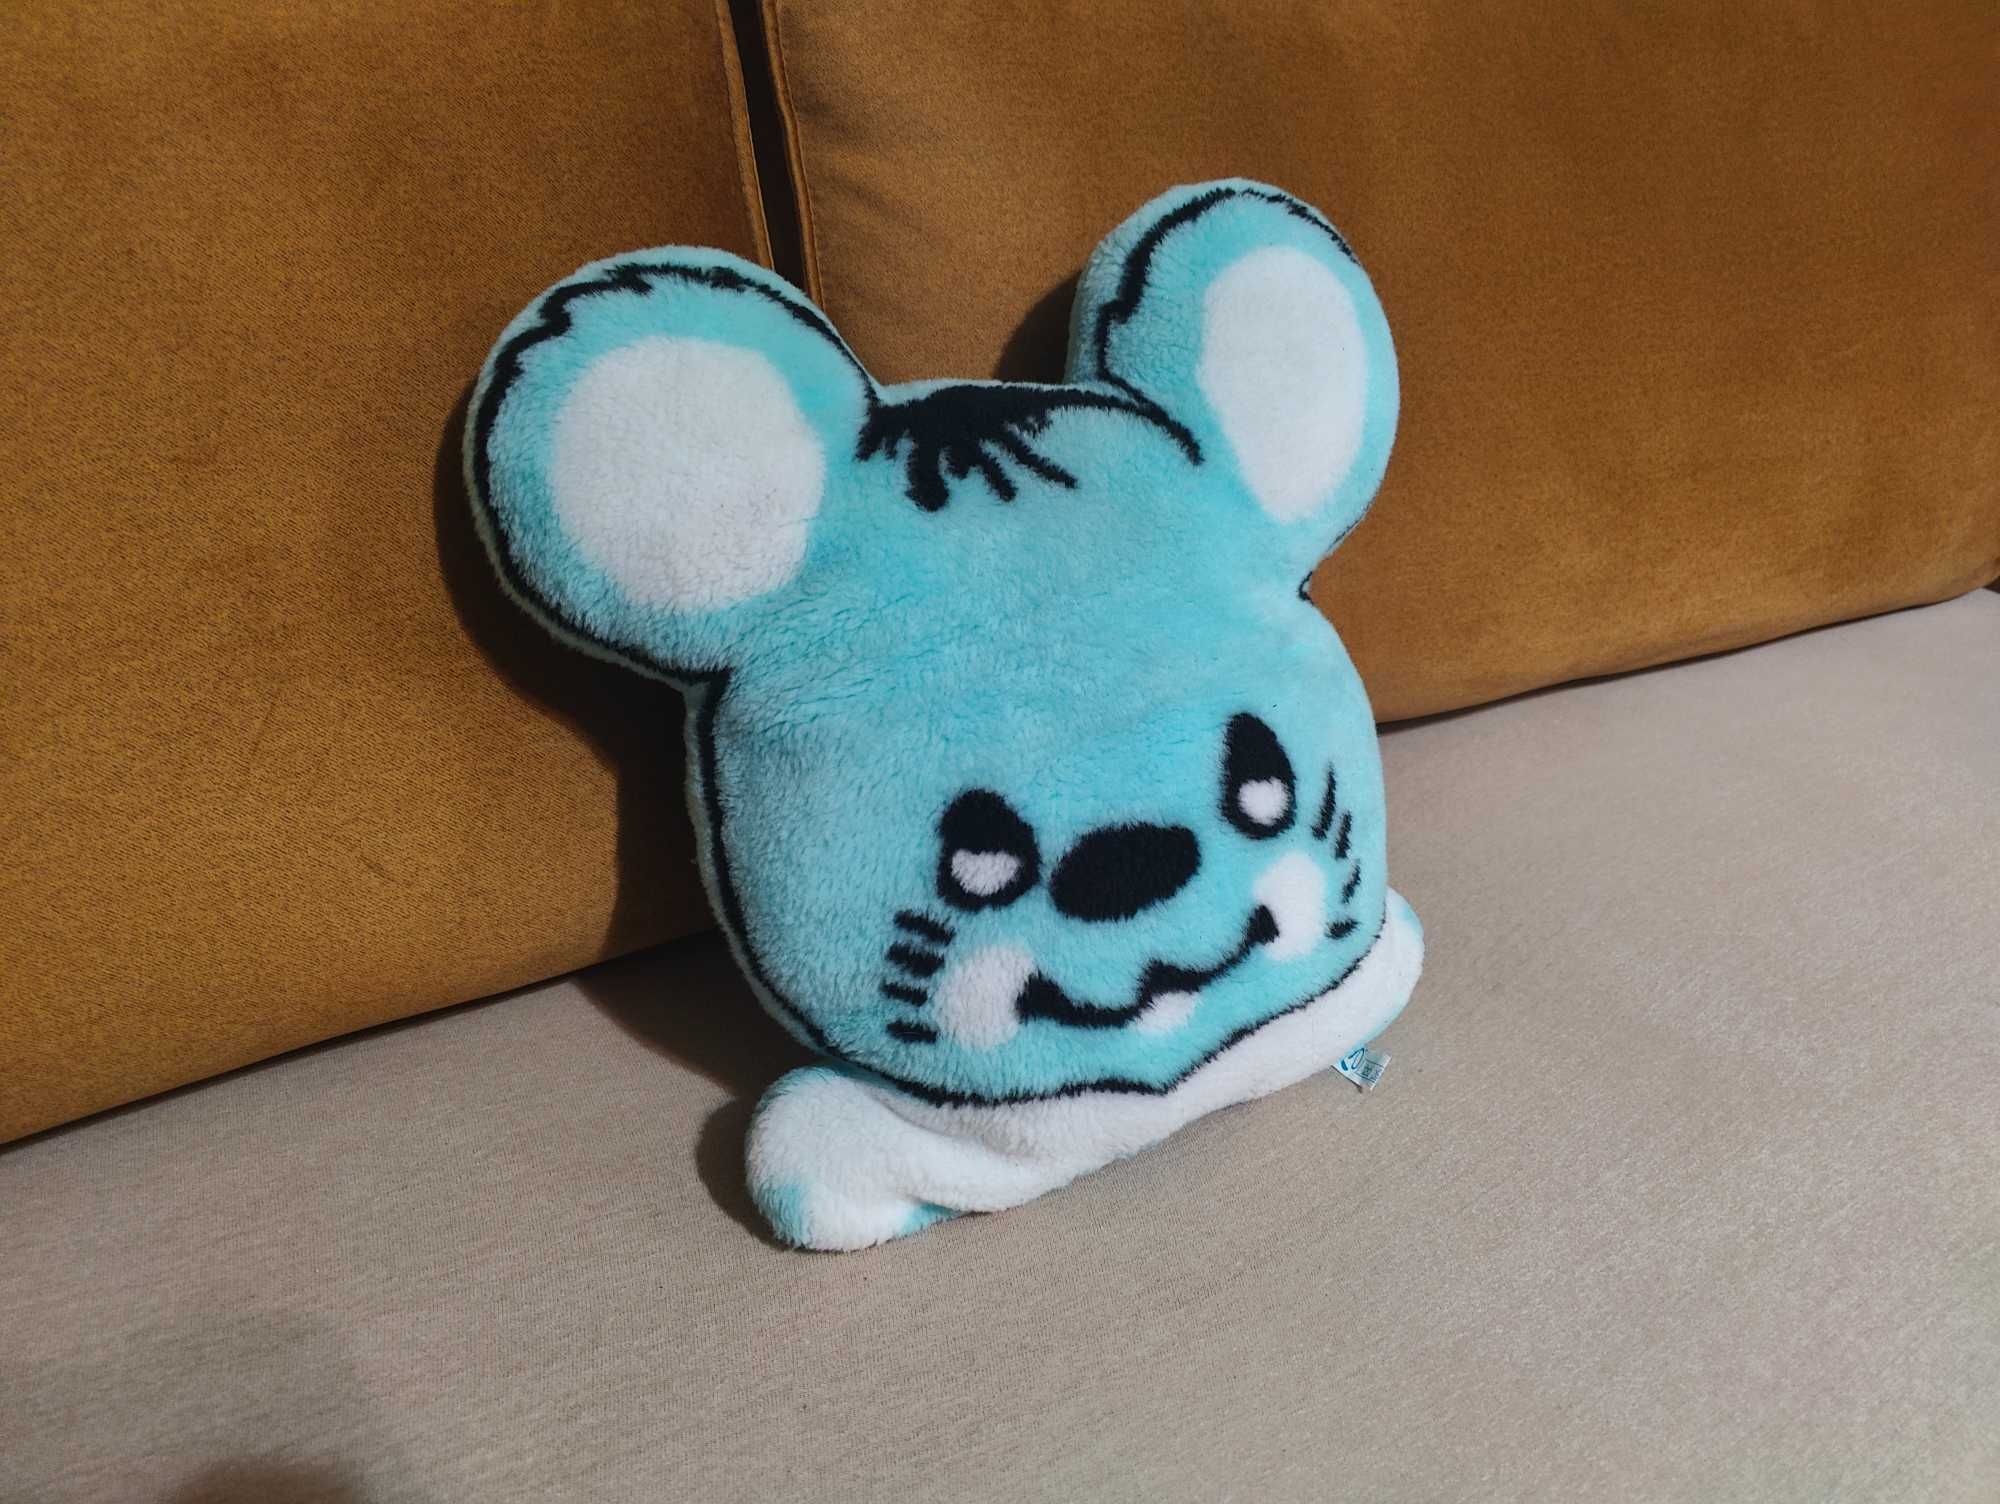 Rewelacyjna poduszka w kształcie myszki, niebieska, uśmiechnięta